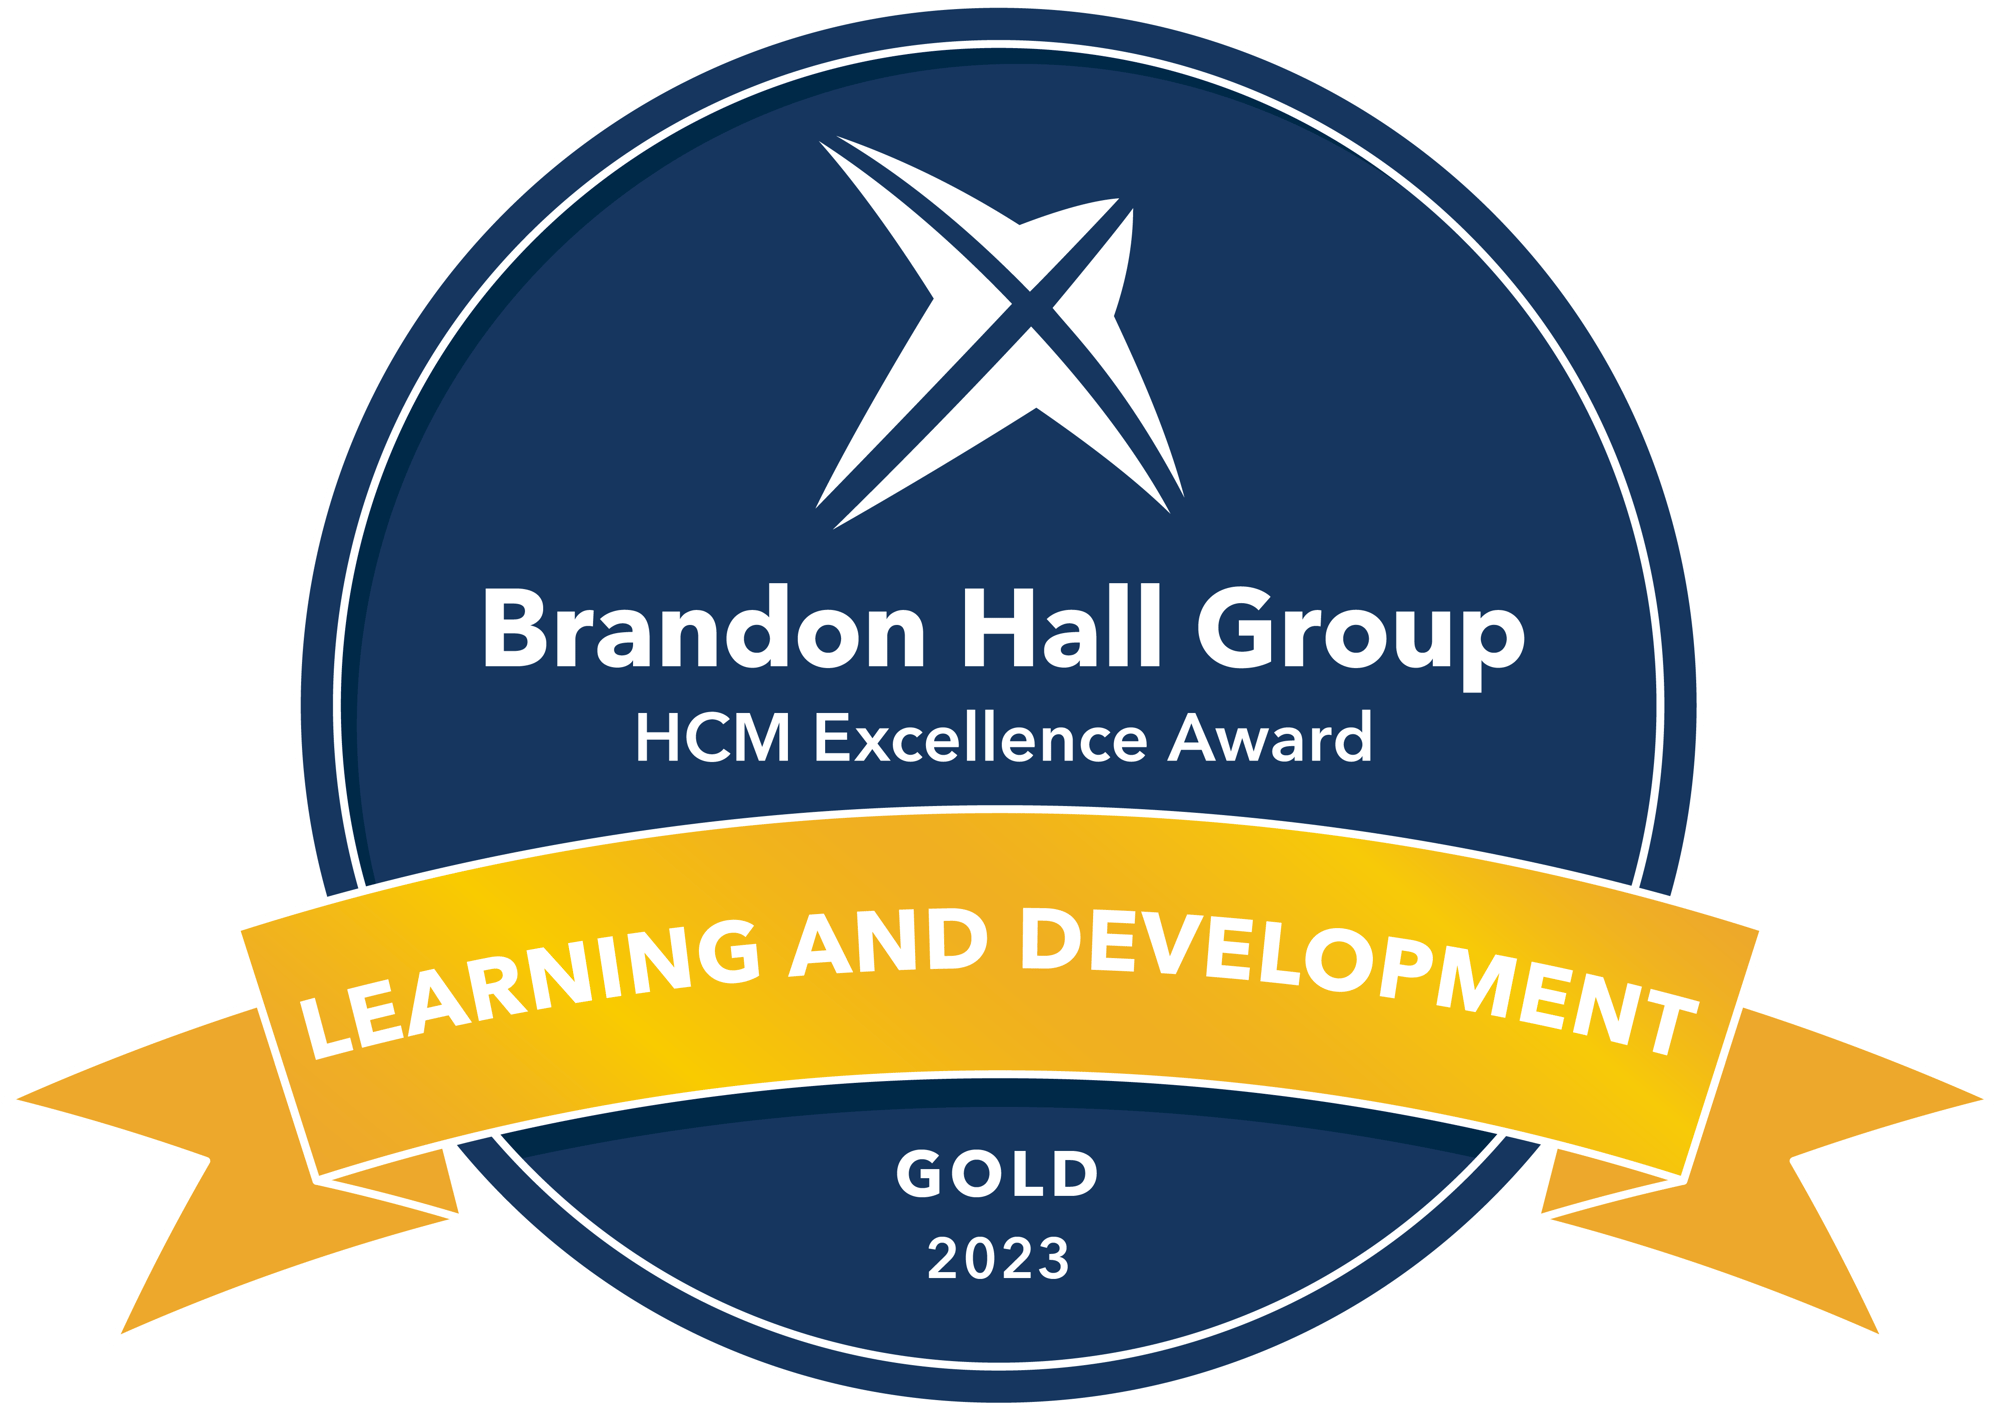 Gold award for Leadership Development